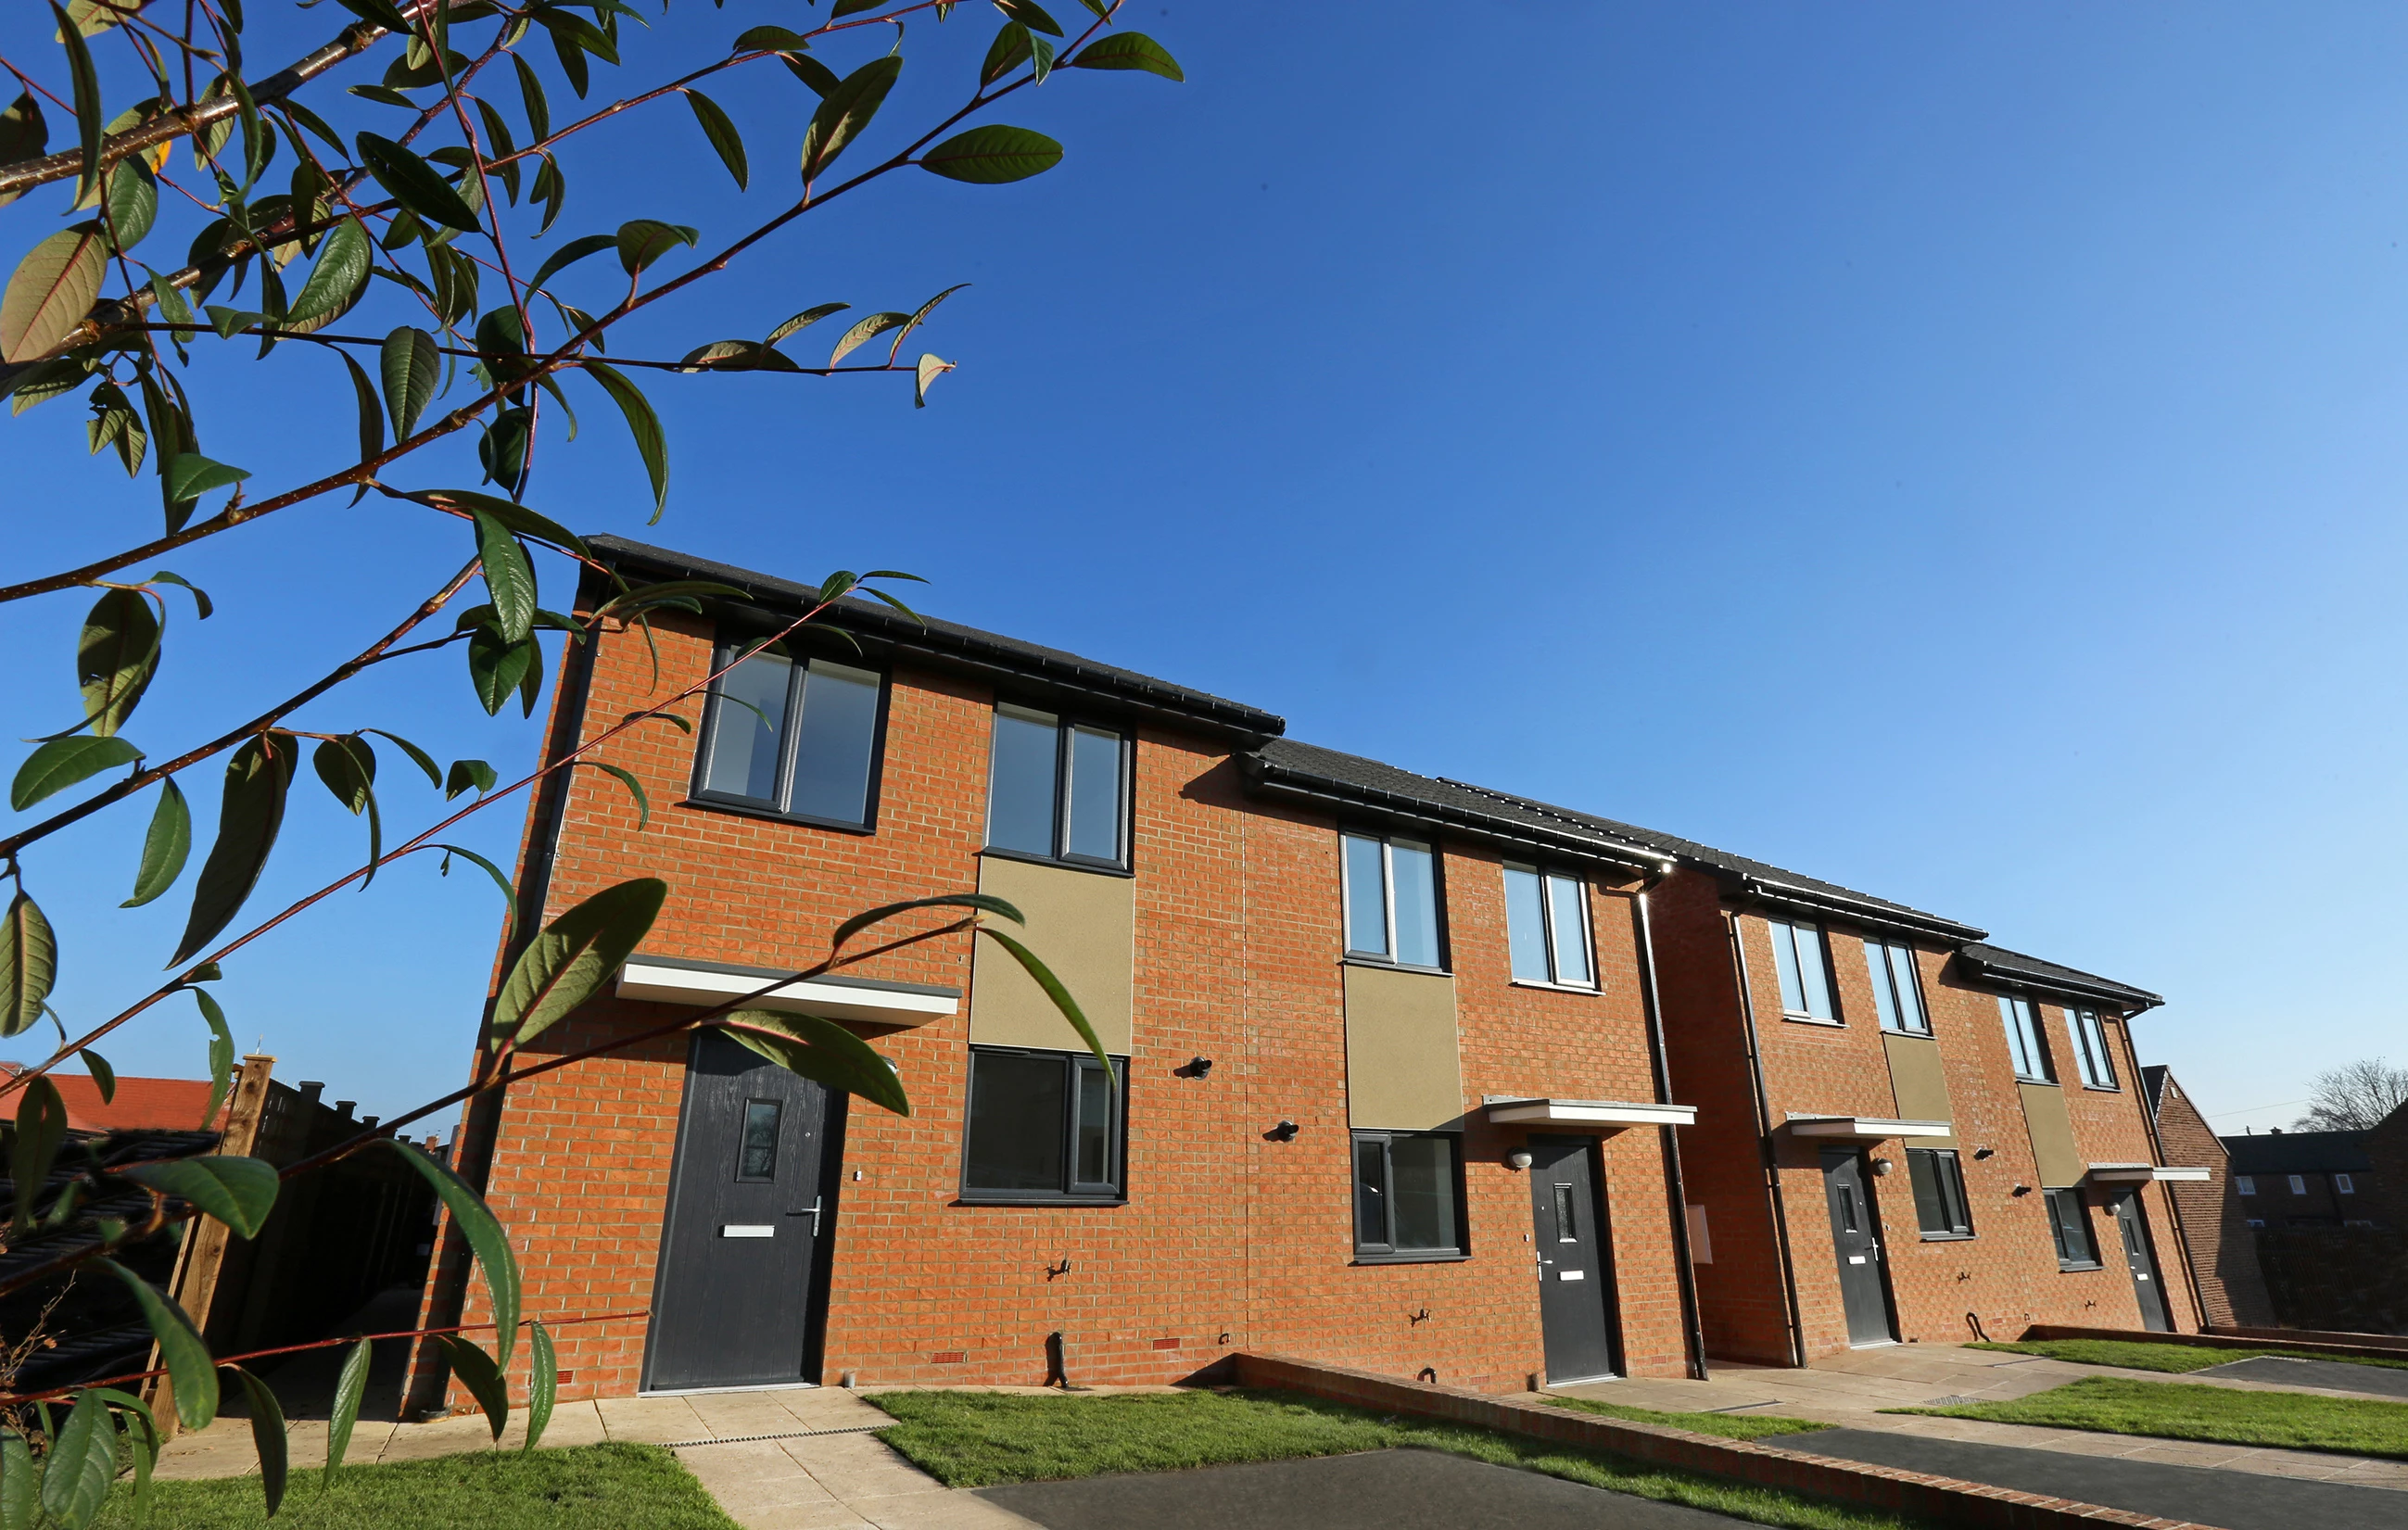 Karbon Homes' regeneration scheme in Pelton, County Durham